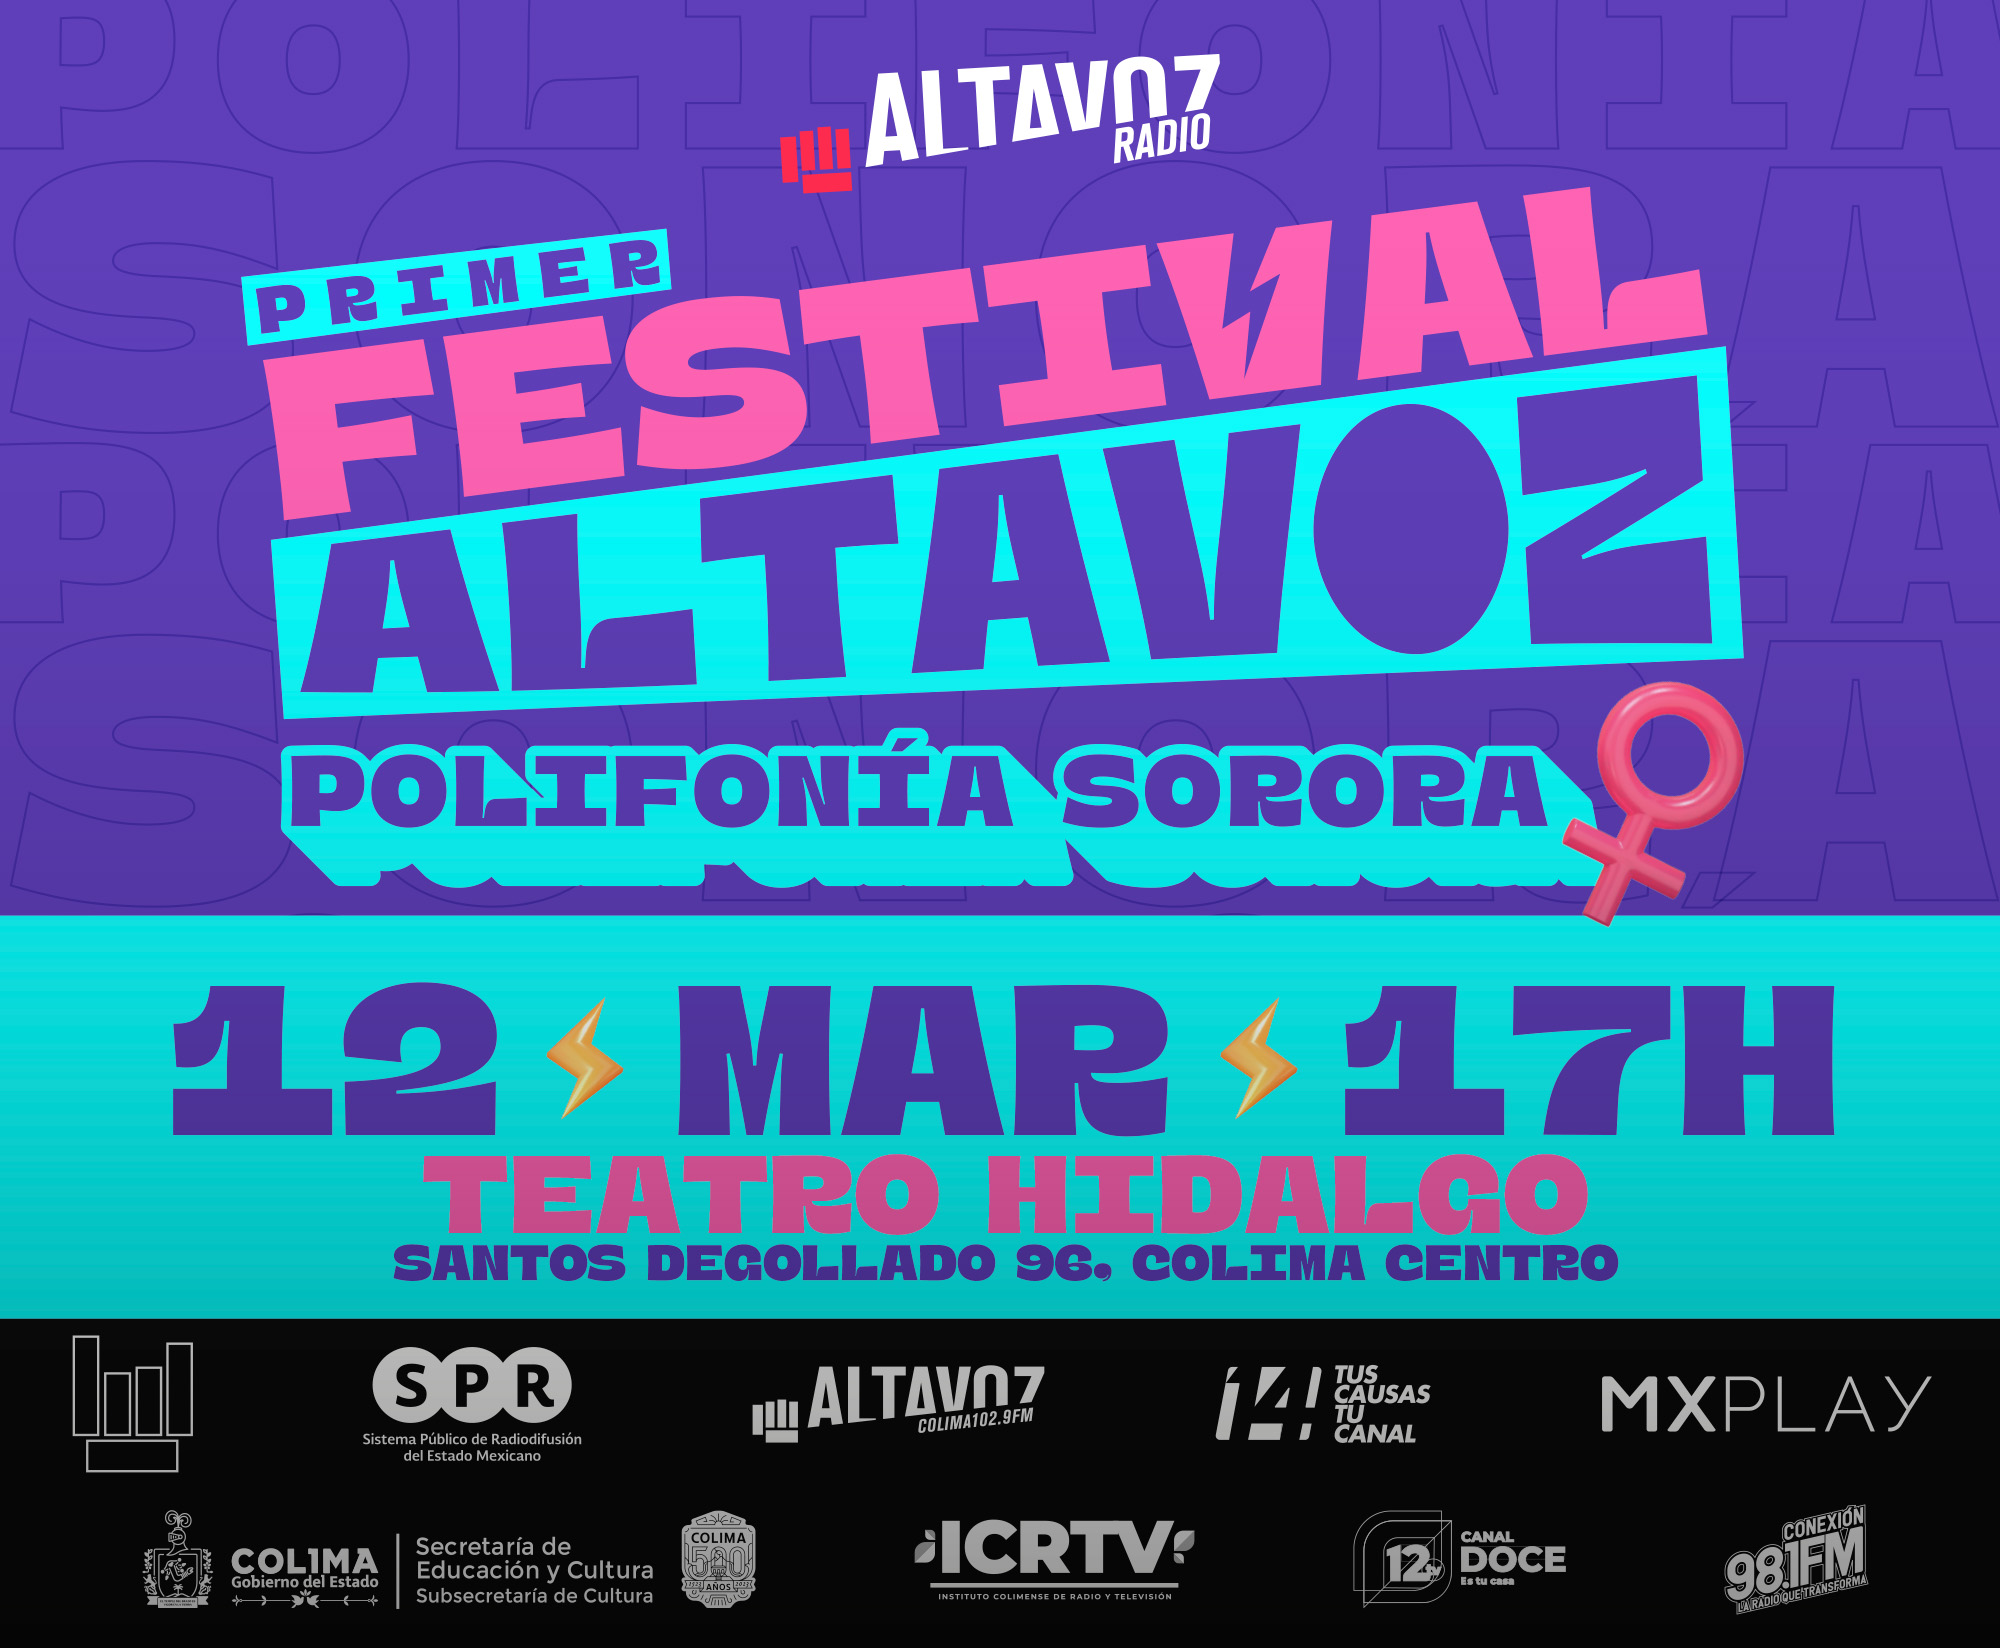 Altavoz Radio del SPR, la Subsecretaría de Cultura del Estado de Colima y el Instituto Colimense de Radio y Televisión realizarán el primer <b><i>Festival Altavoz: Polifonía Sorora</i></b>, el 12 de marzo de 2023, en la ciudad de Colima.